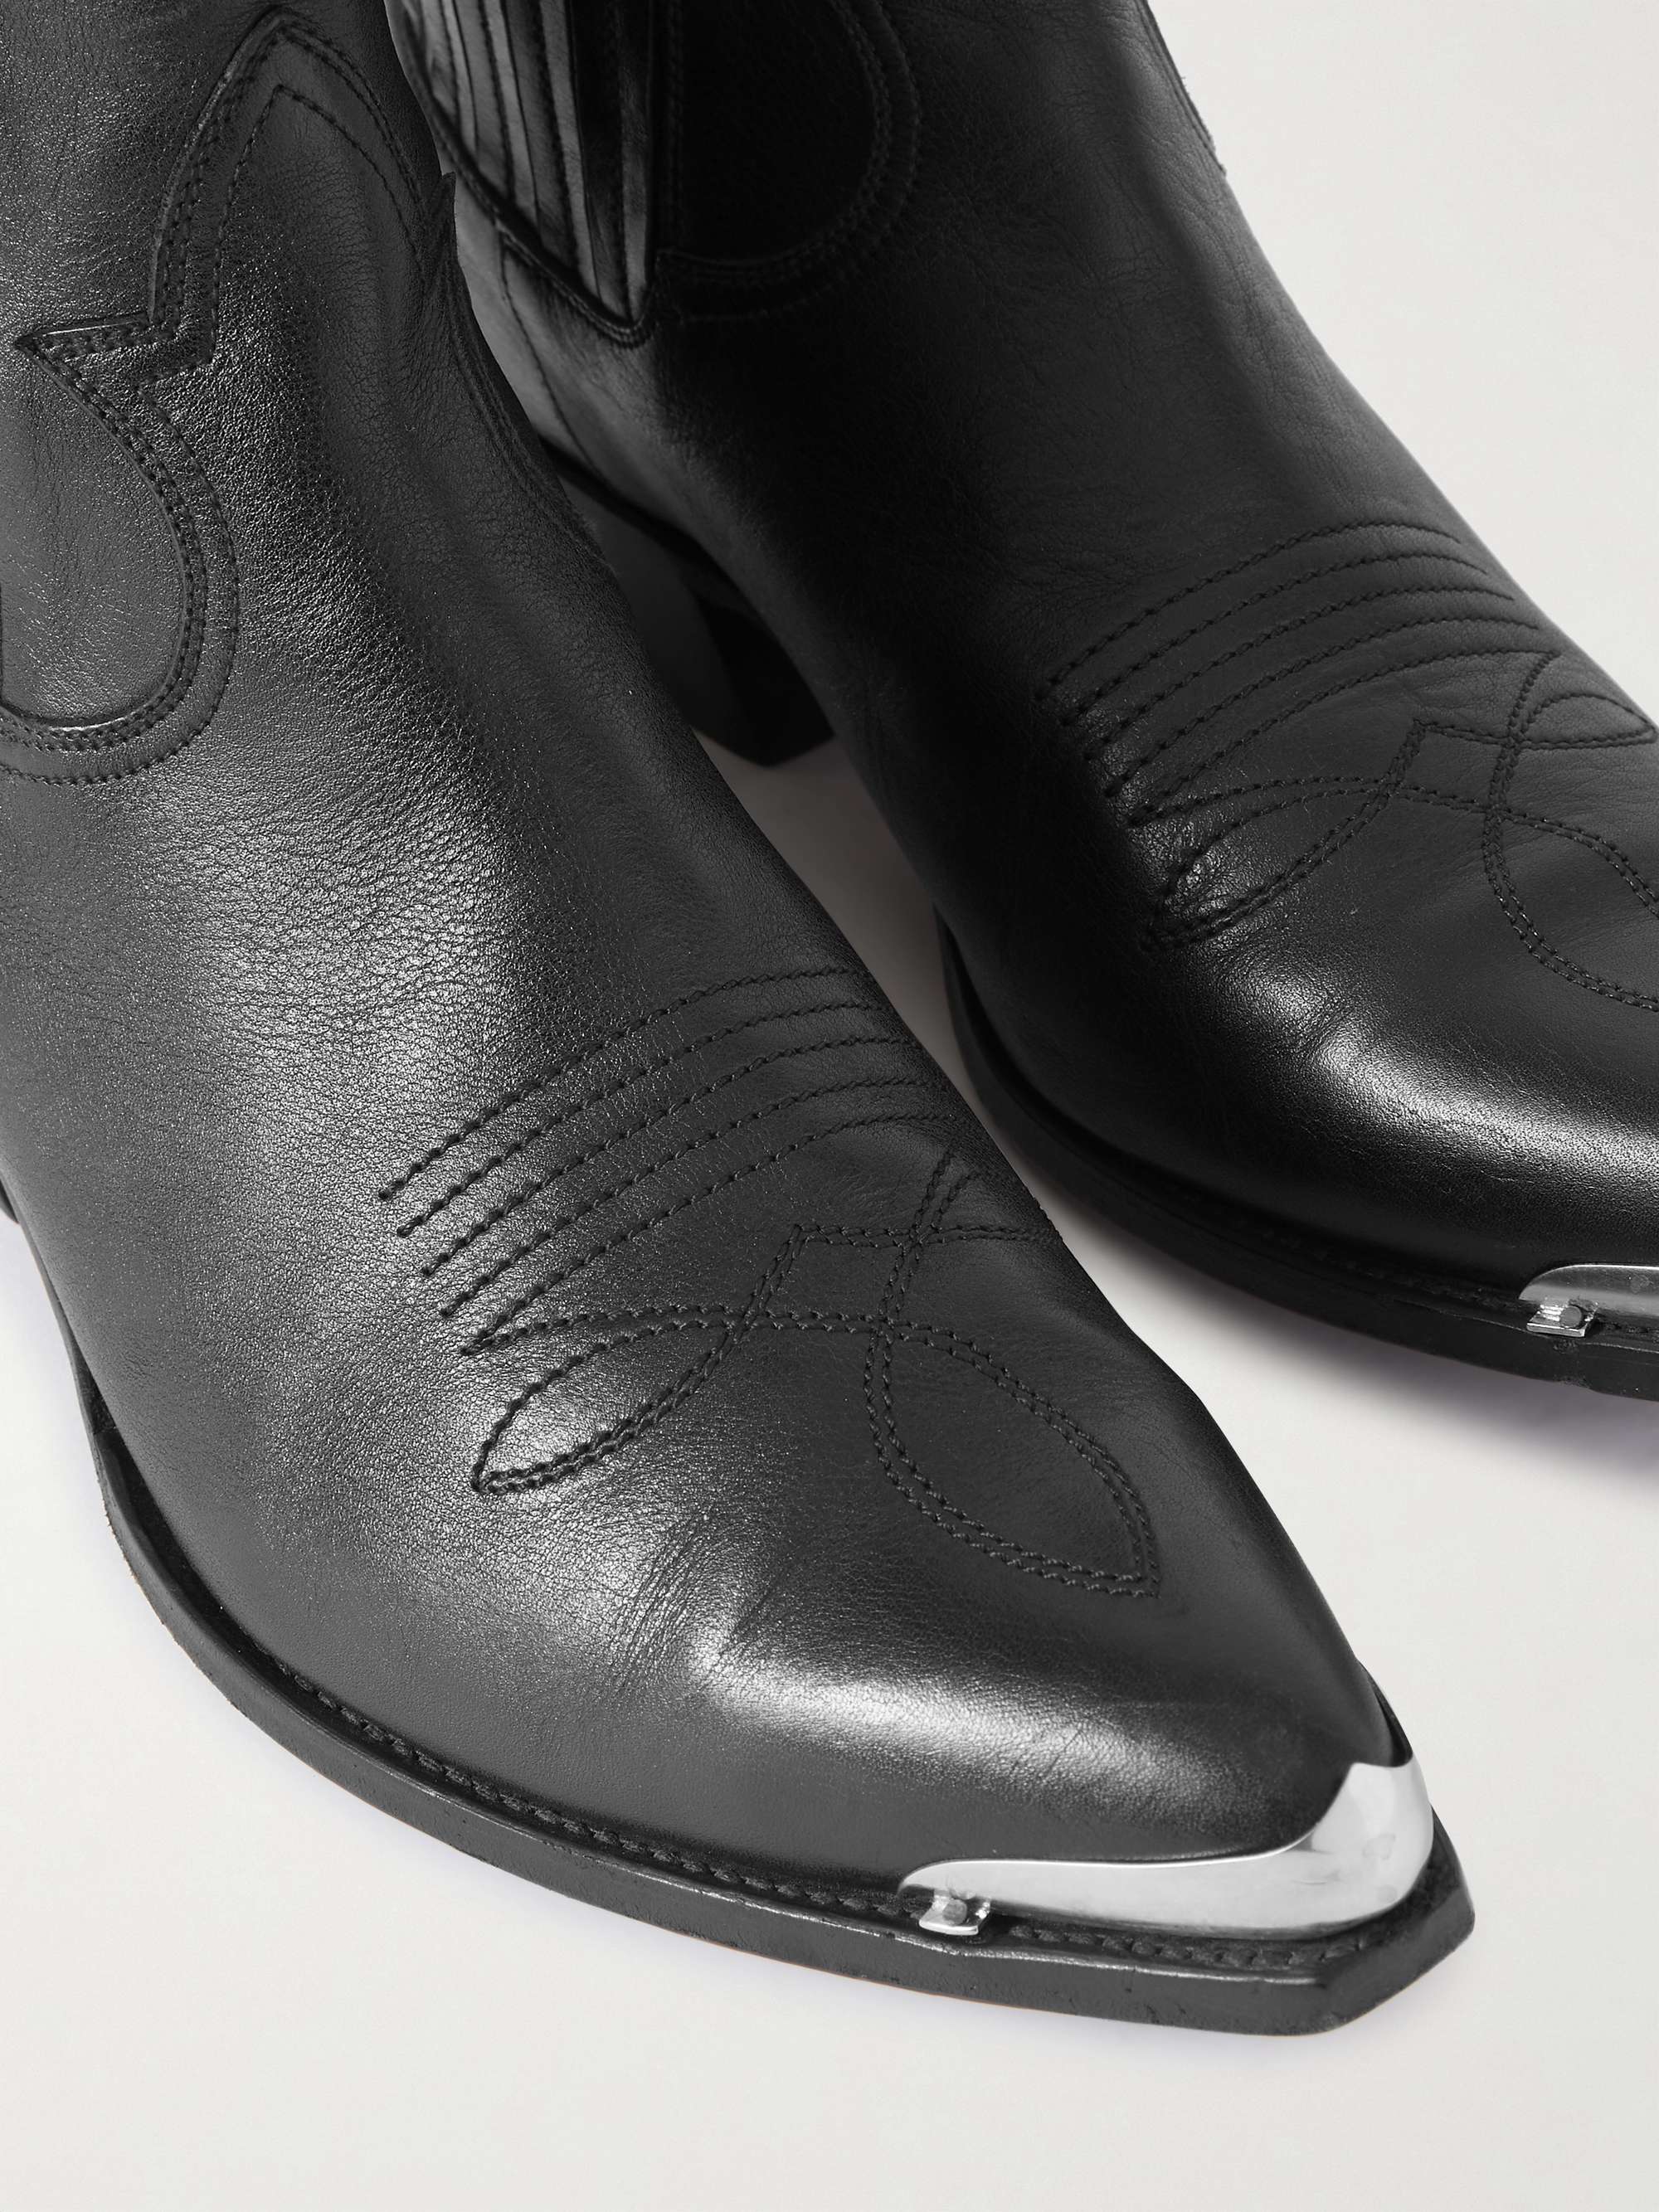 CELINE HOMME Embellished Embroidered Leather Chelsea Boots | MR PORTER